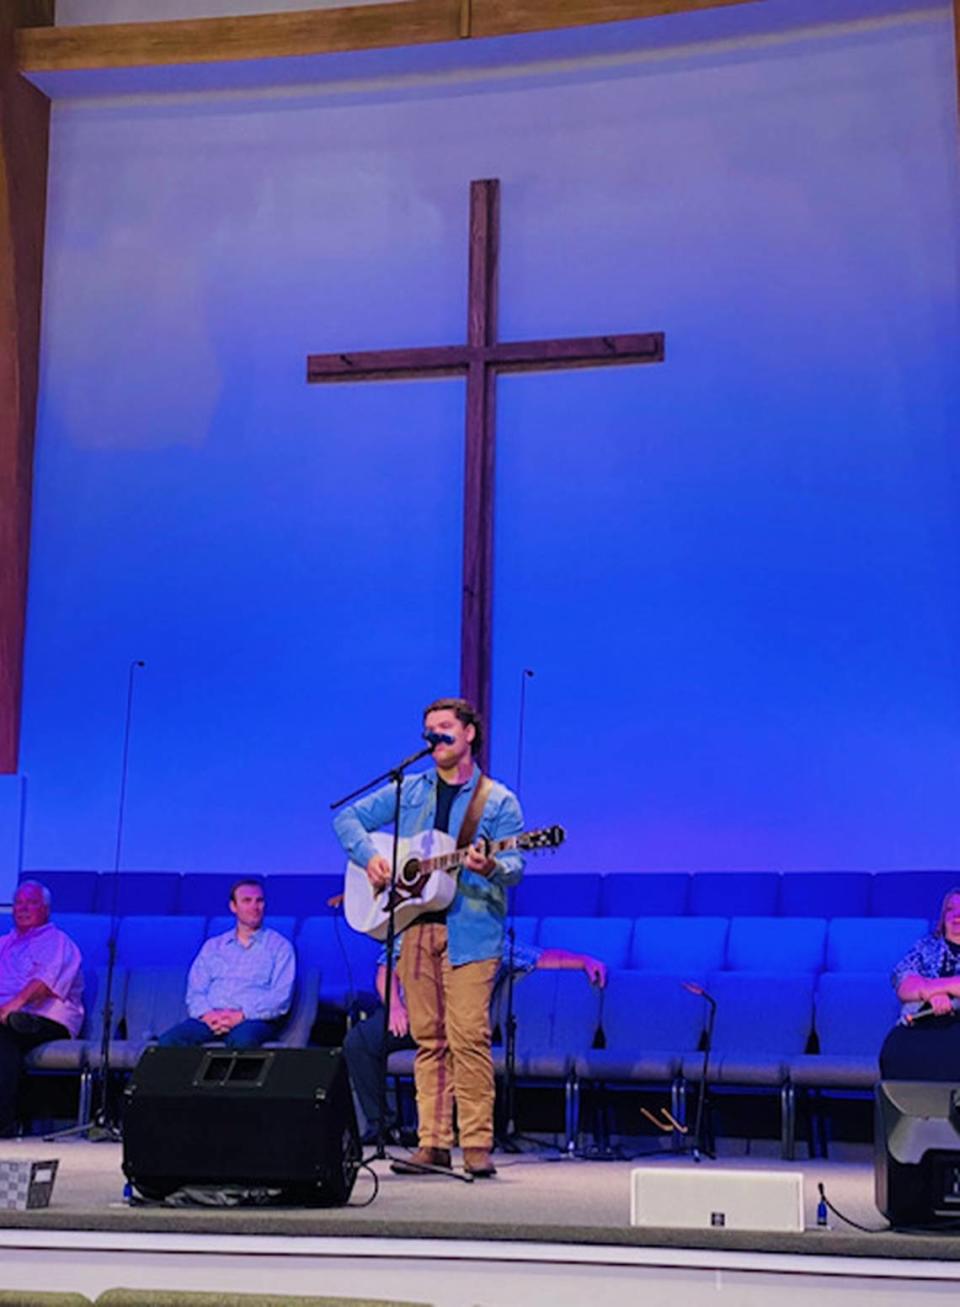 Caleb Kennedy attends Woodruff Church of God.